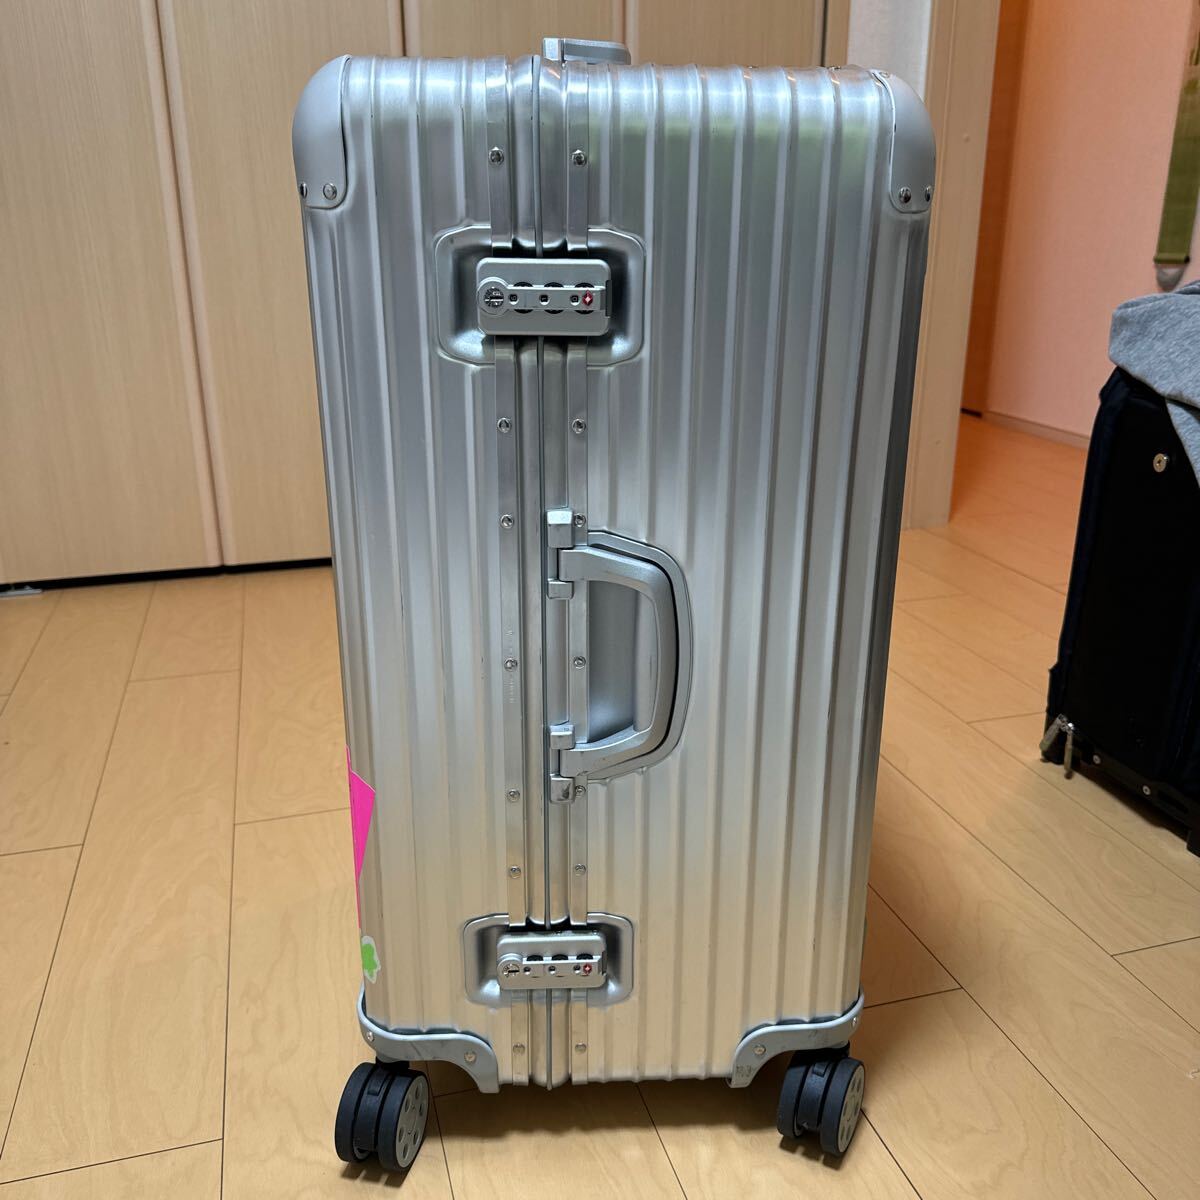 スーツケース リモワ シルバー オリジナル RIMOWA キャリーケース 